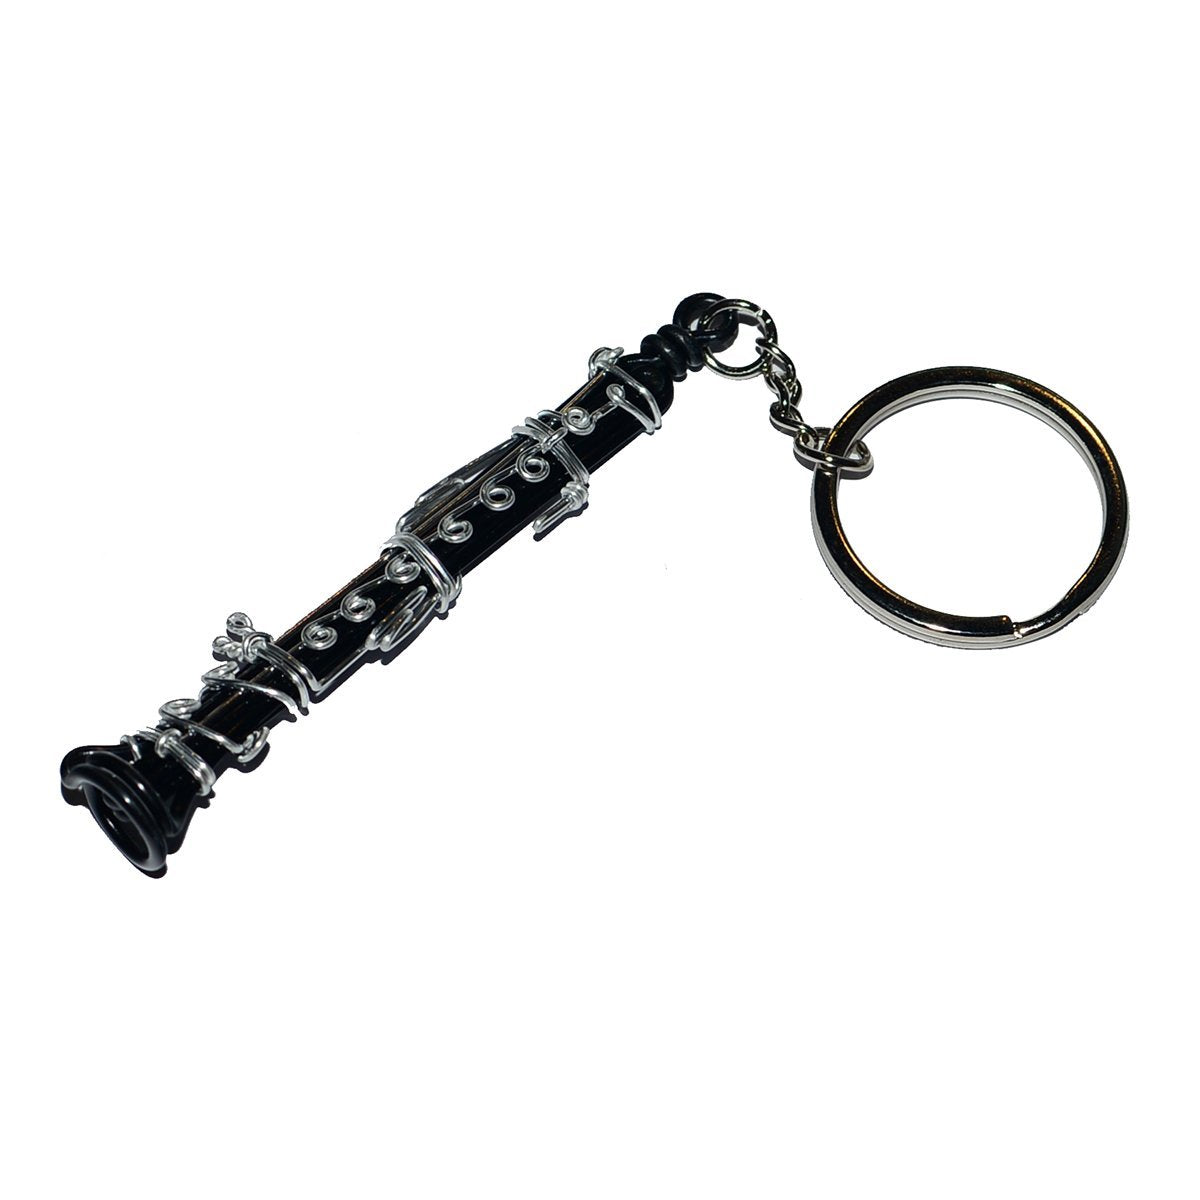 Wire Art Walker - Bb Clarinet Keychain-Accessories-Wire Art Walker-Music Elements